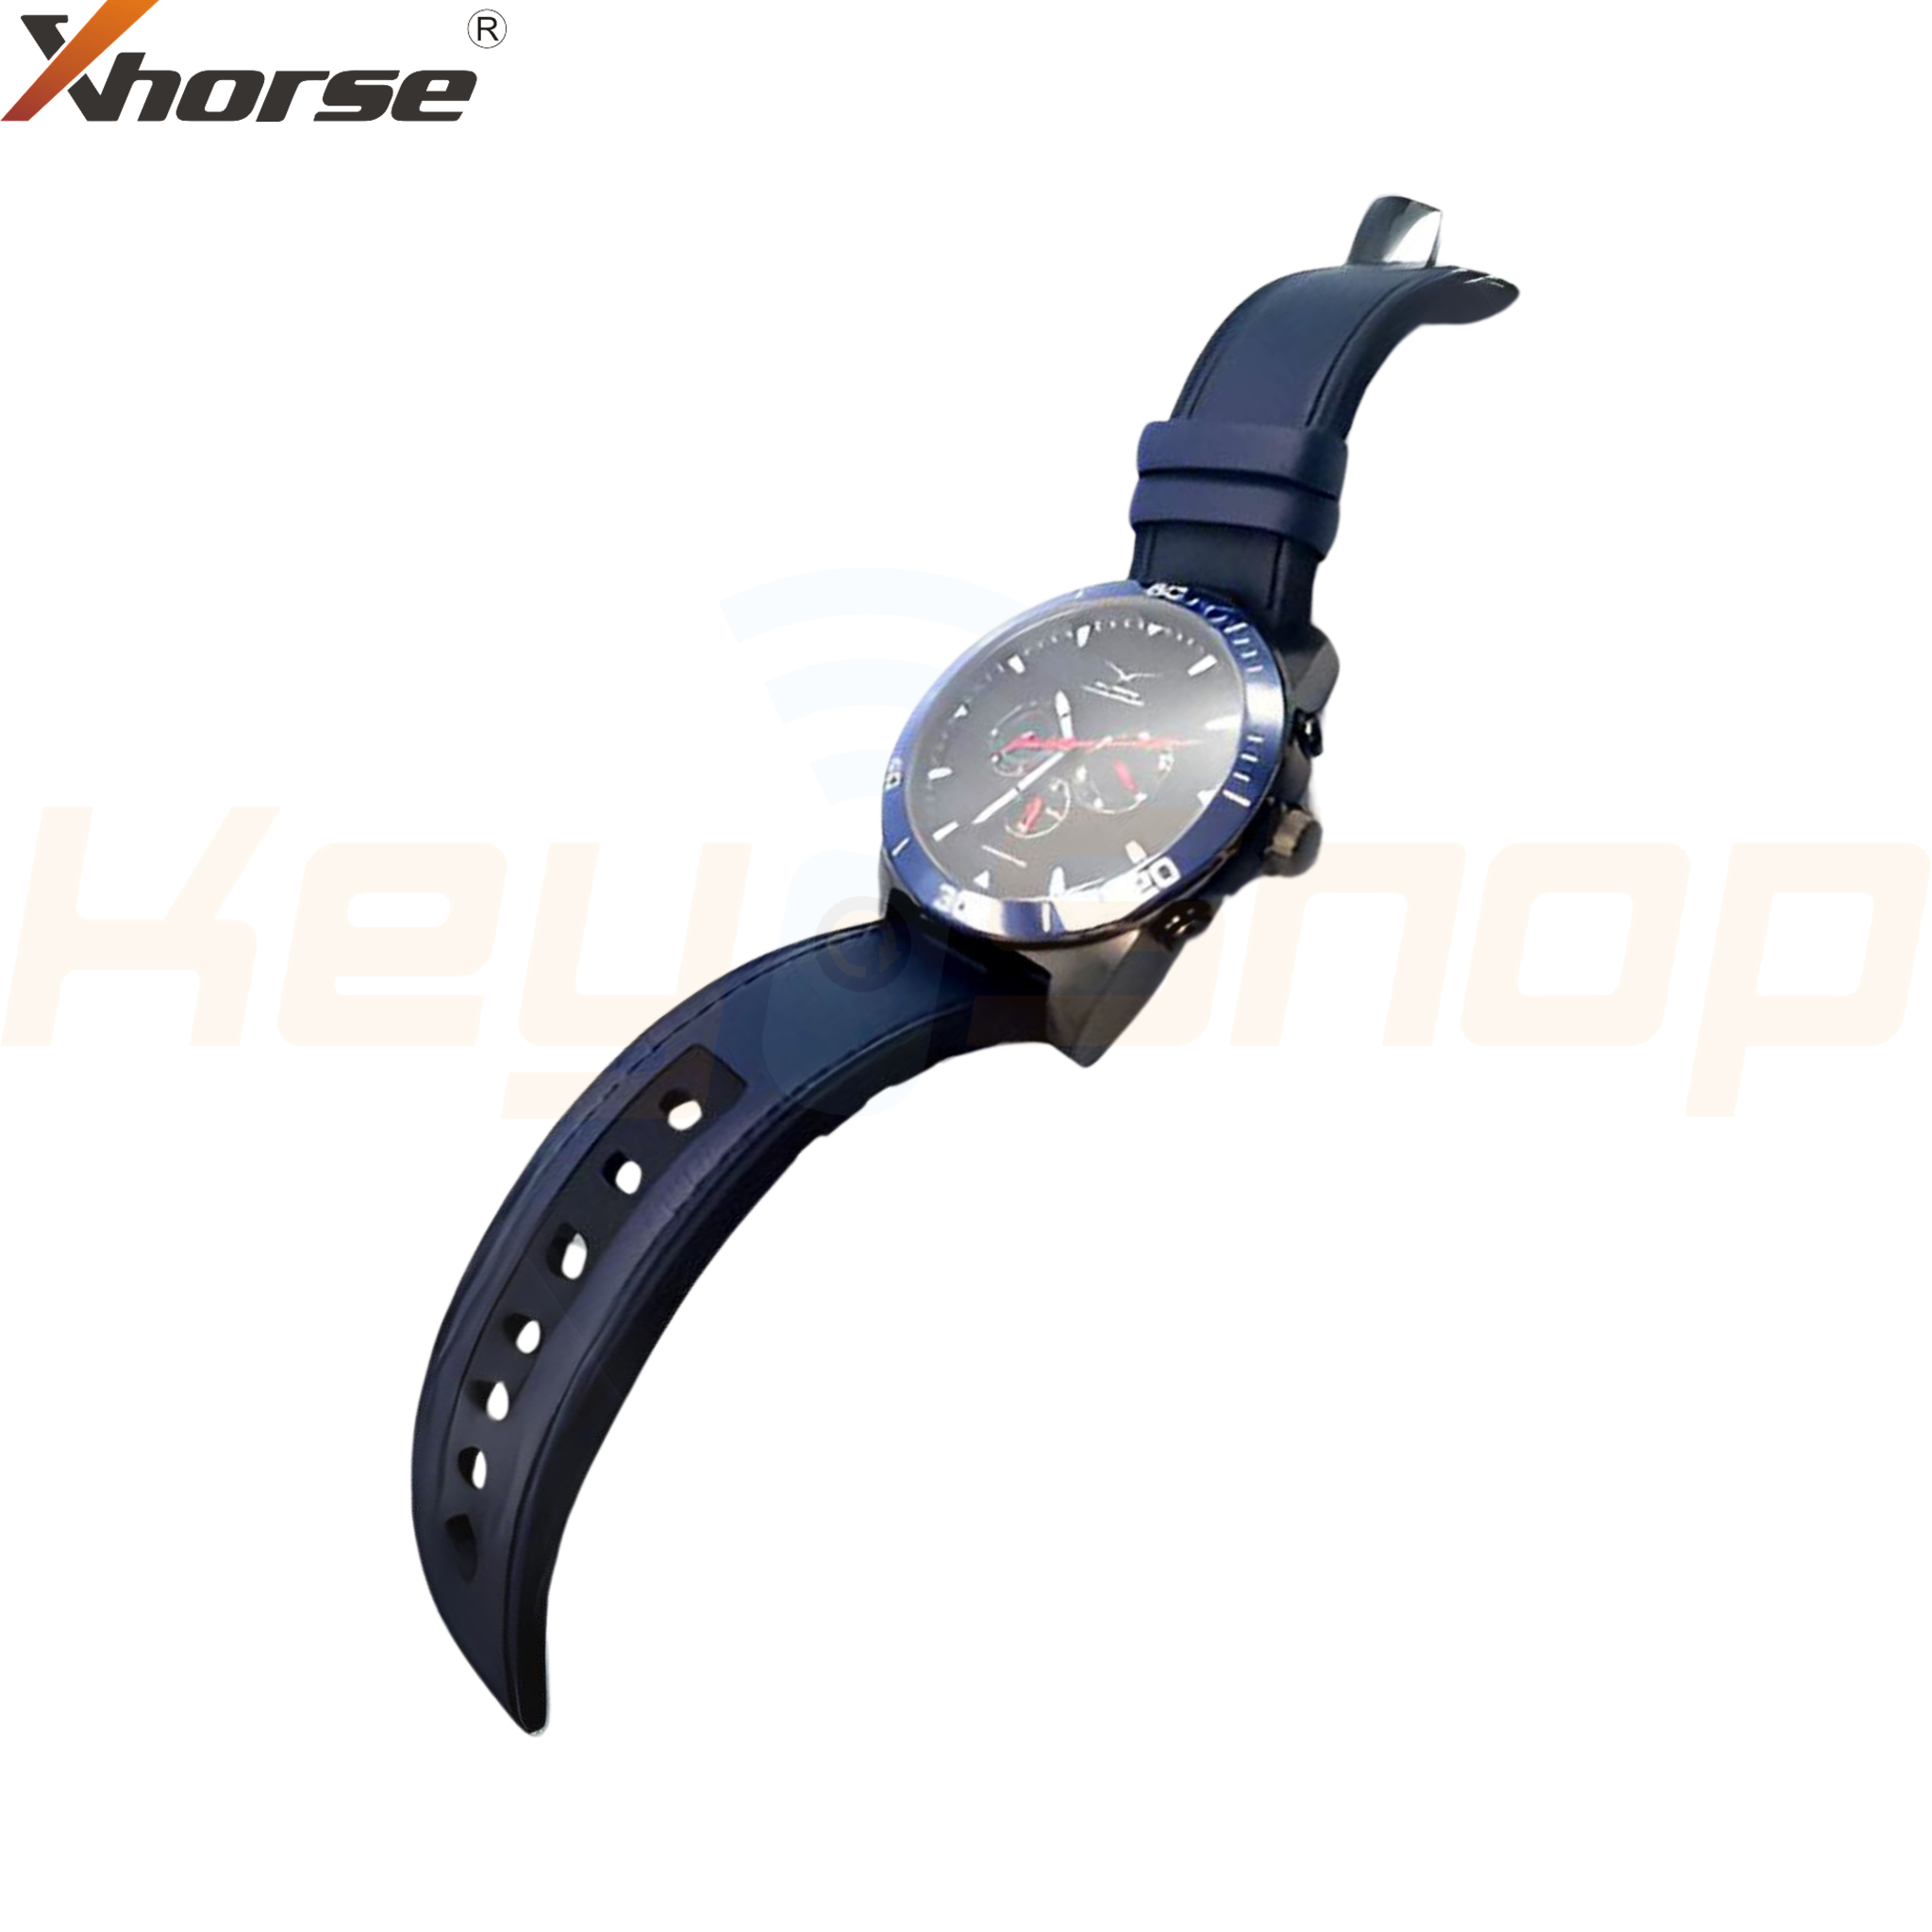 מפתח חכם שעון אוניברסלי אקסהורס-סטייל | 4-לחצנים | XSWK05 | VVDI (כחול)